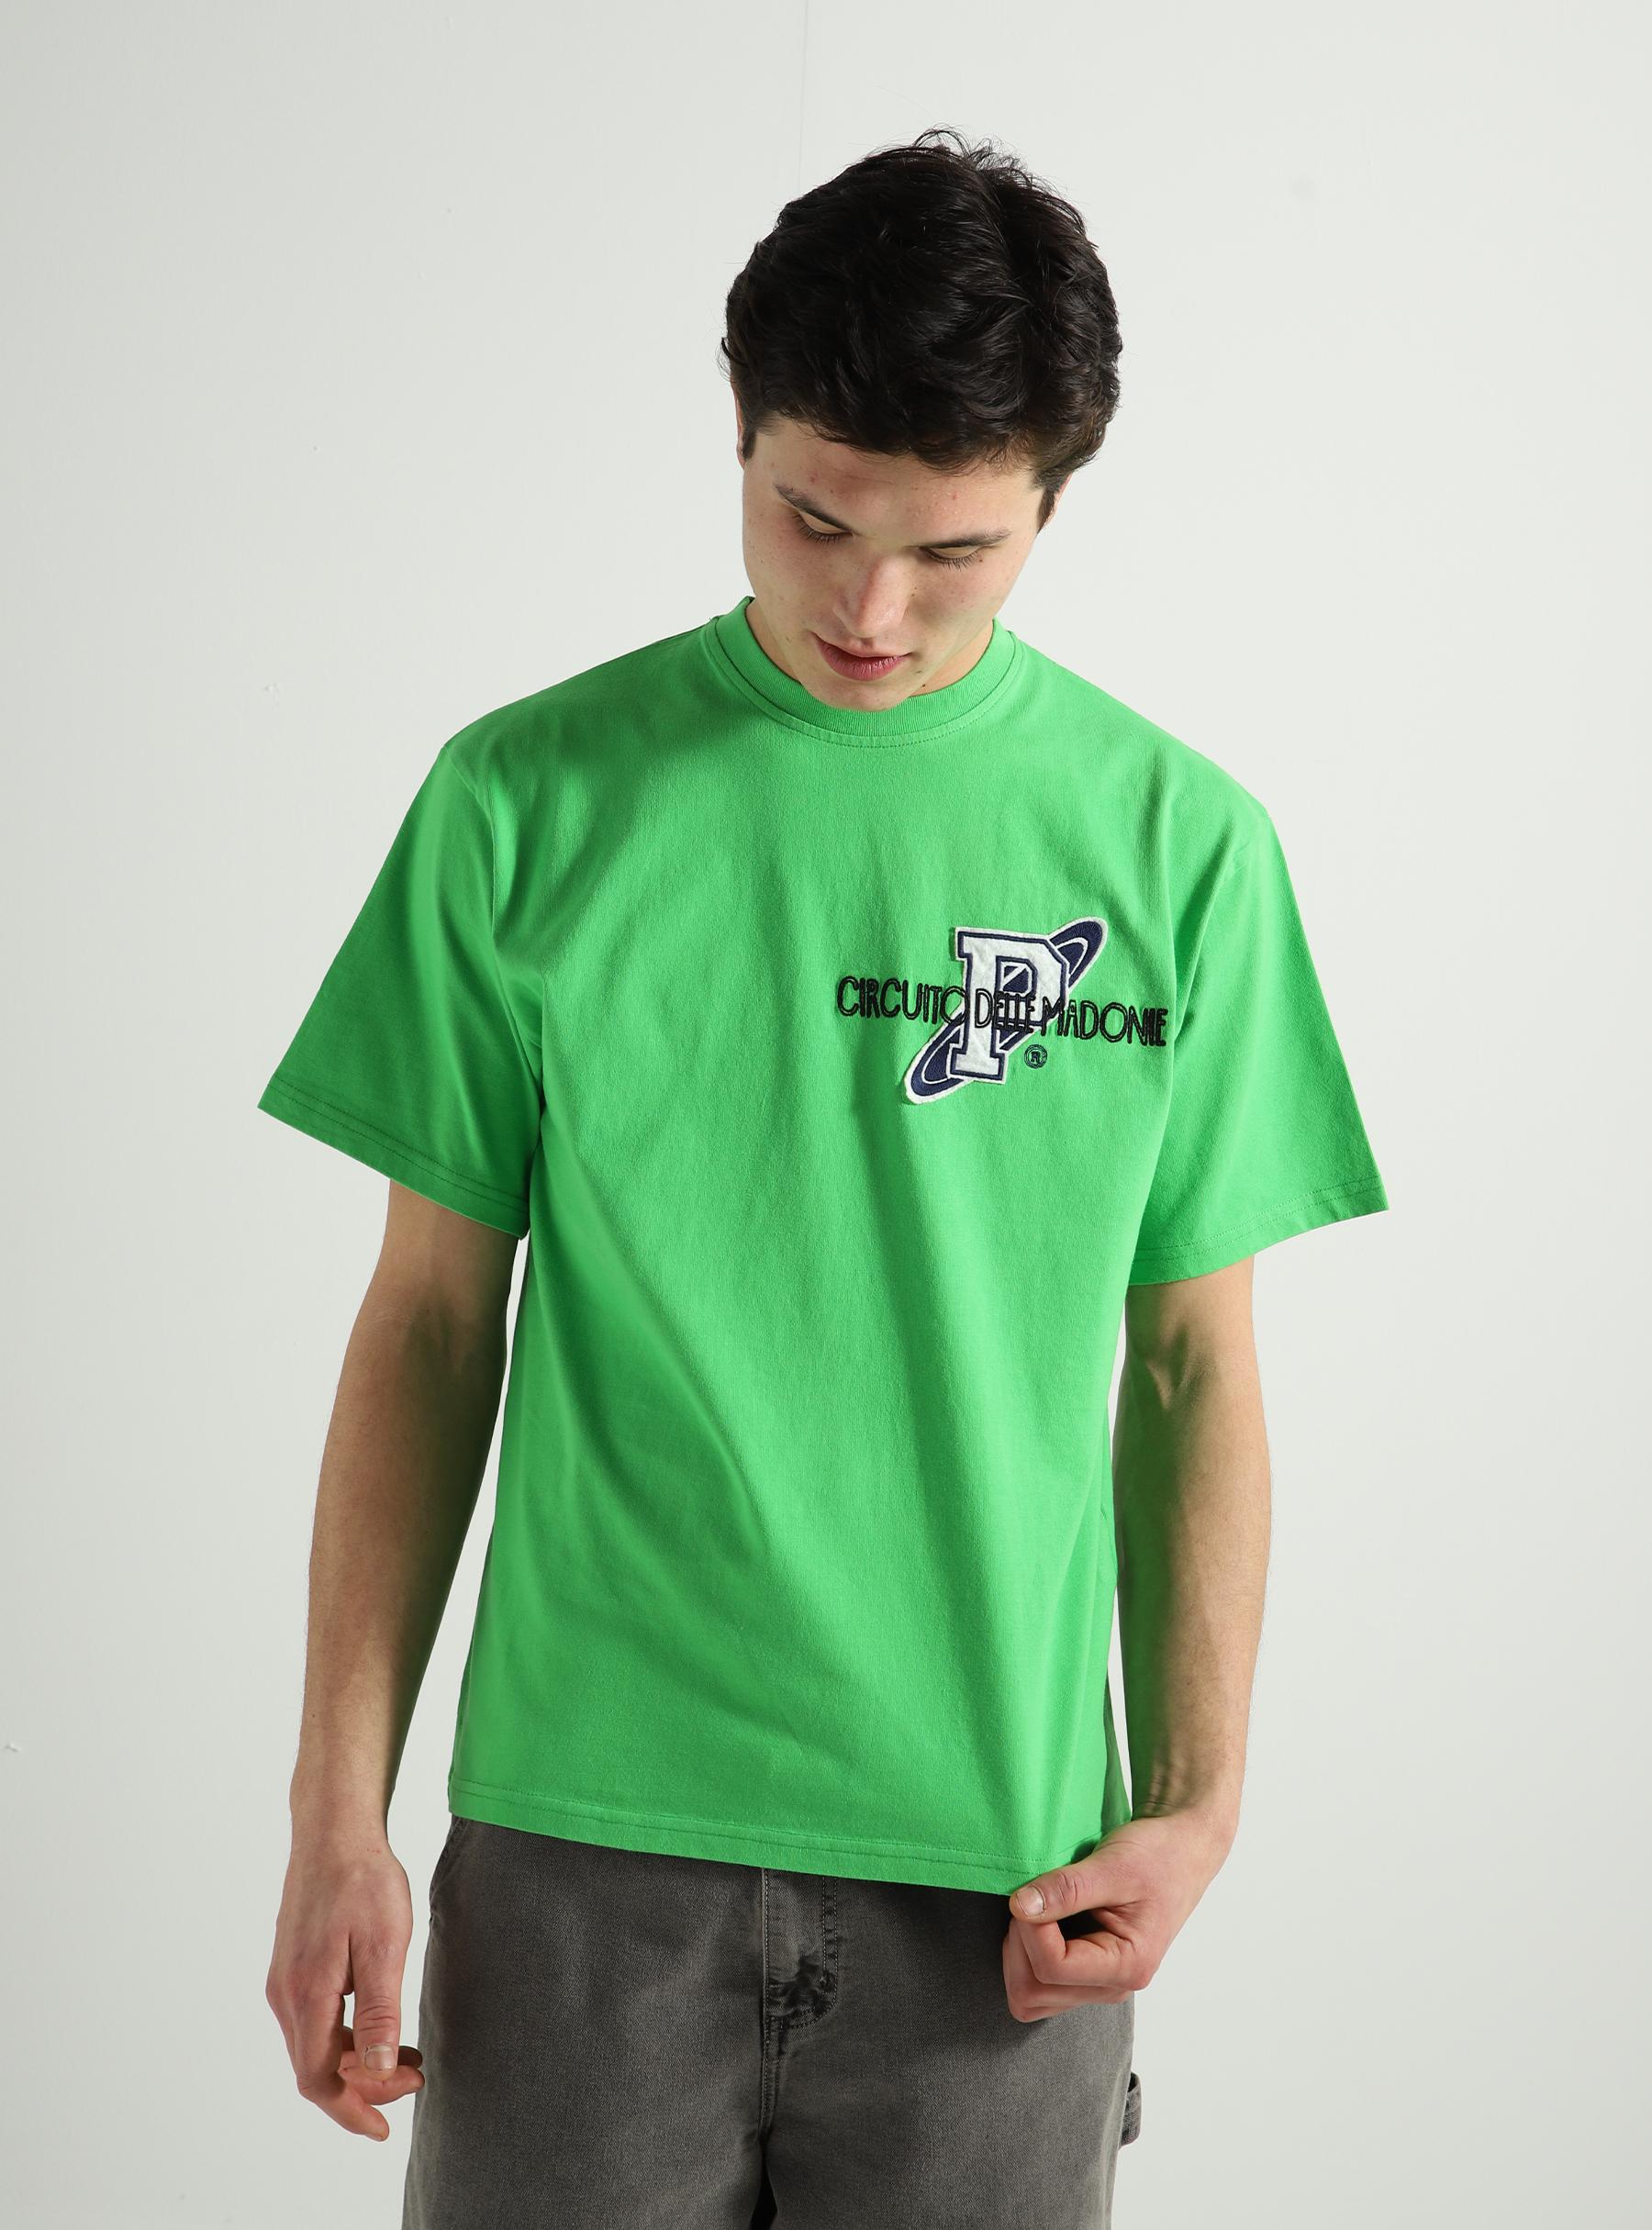 Racing Group T-shirt Light Green PALSS24002